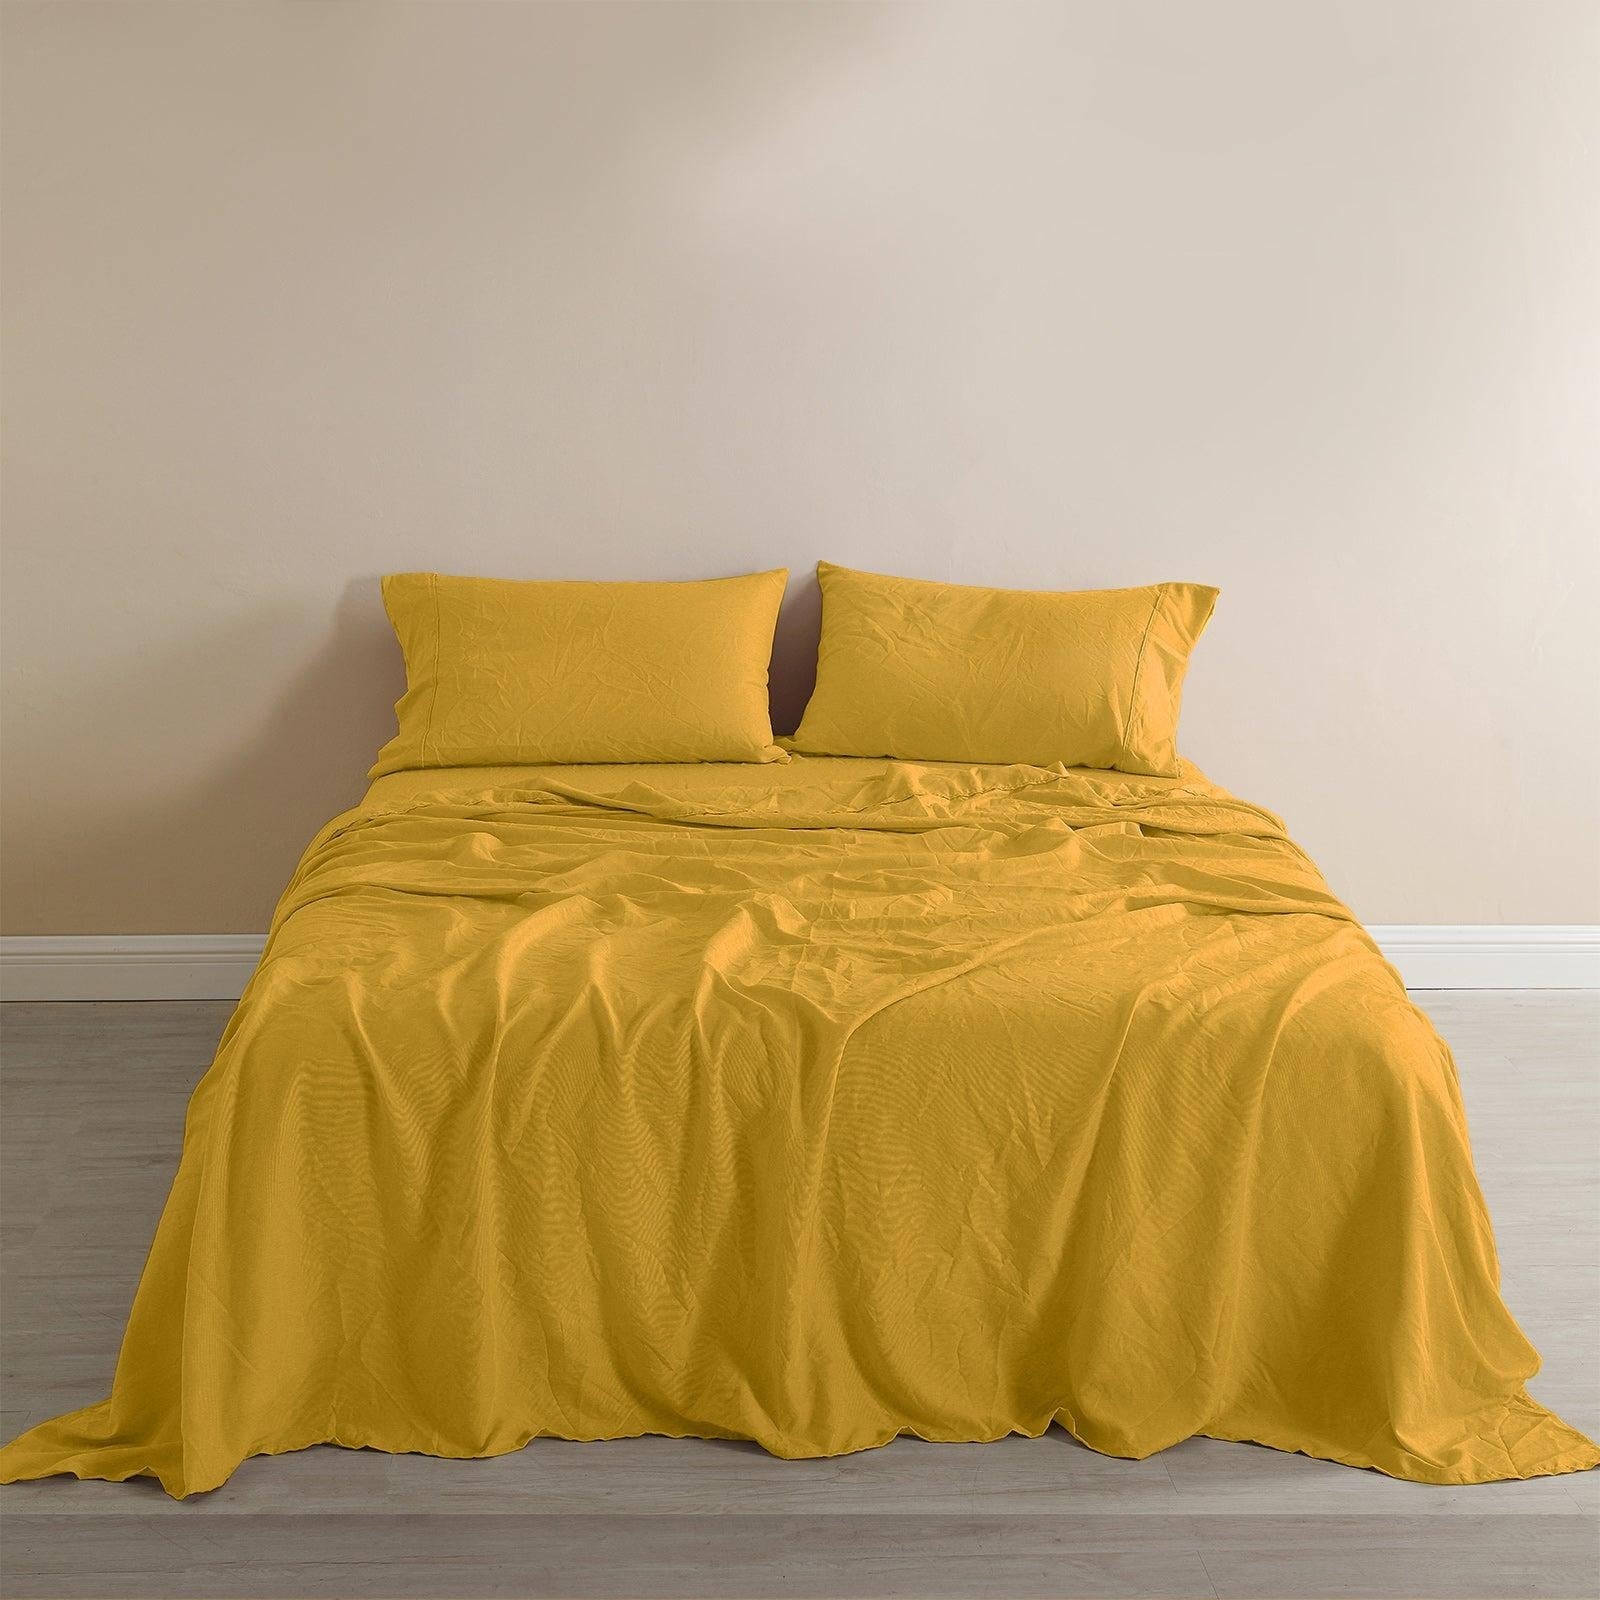 Royal Comfort Flax Linen Blend Sheet Set Bedding Luxury Breathable Ultra Soft Mustard Gold Queen Deals499